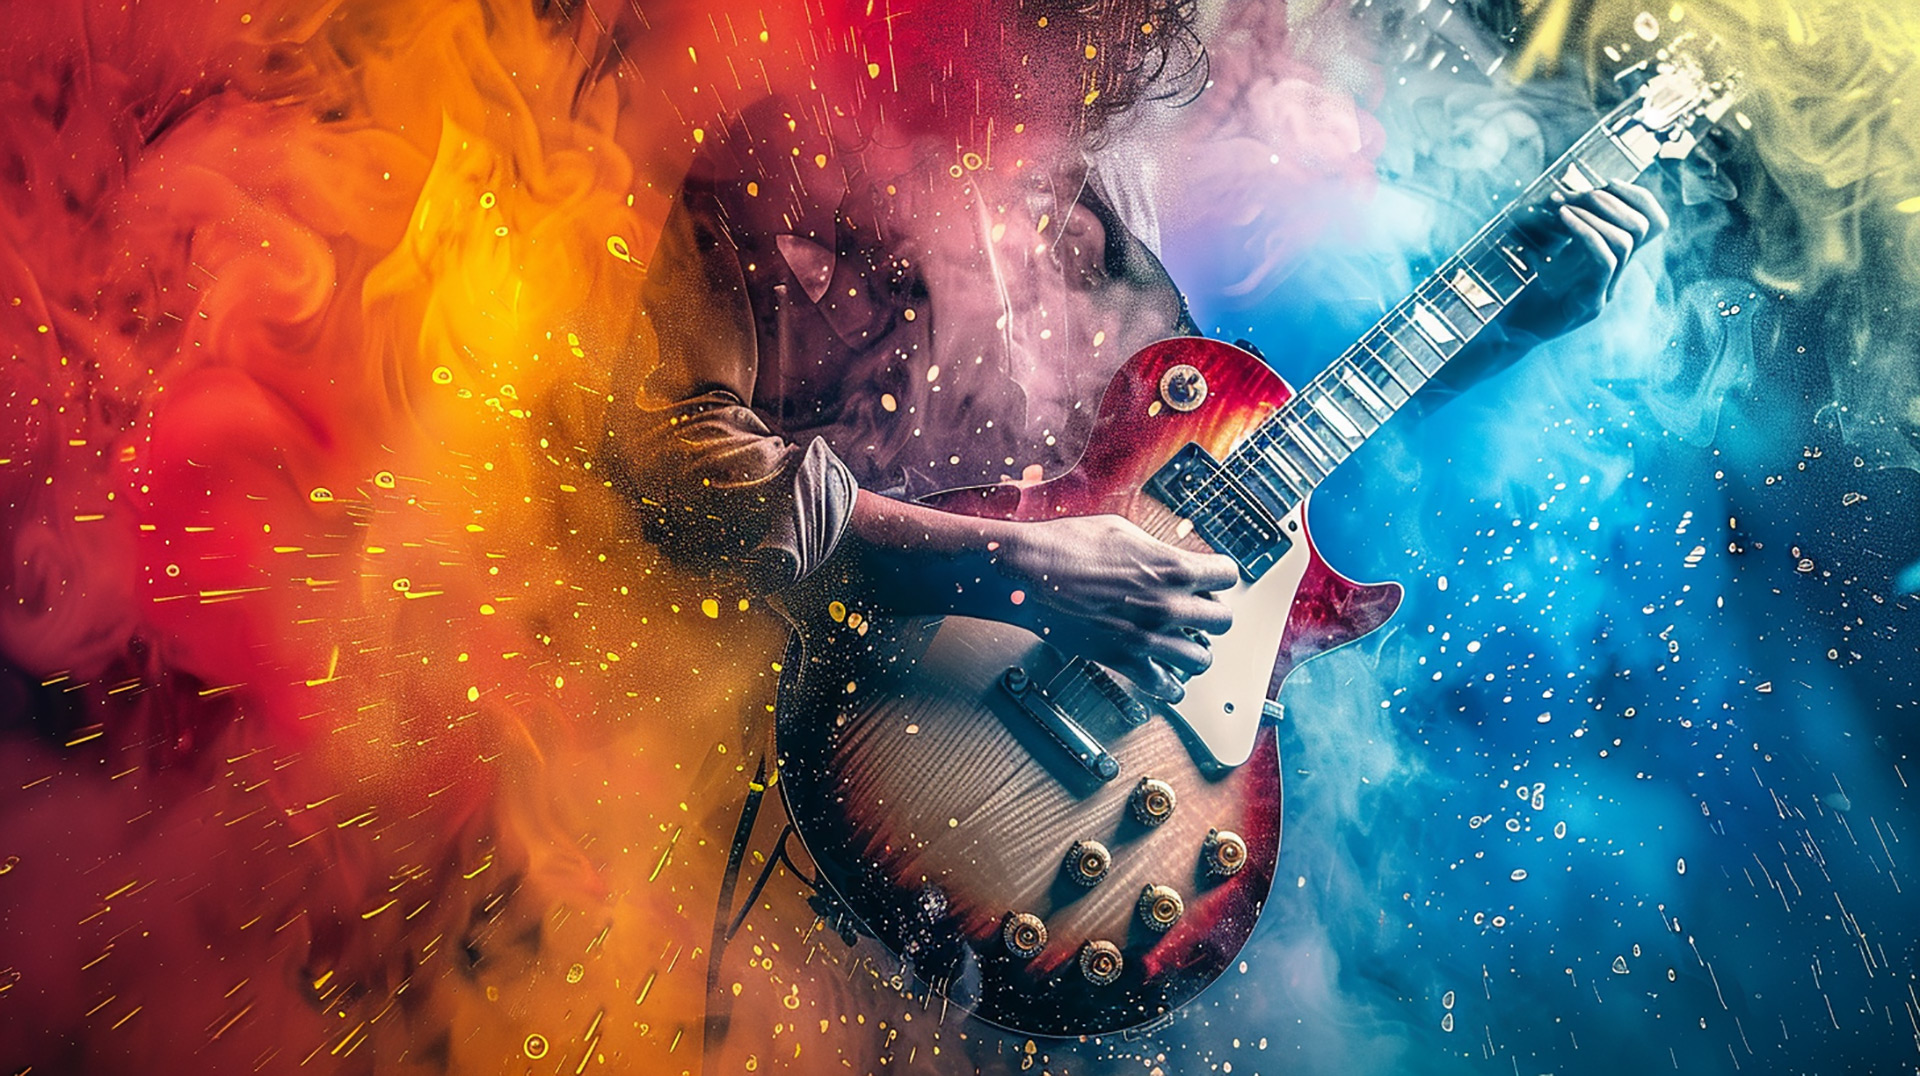 Guitar Legends: Digital Background of Rock Music